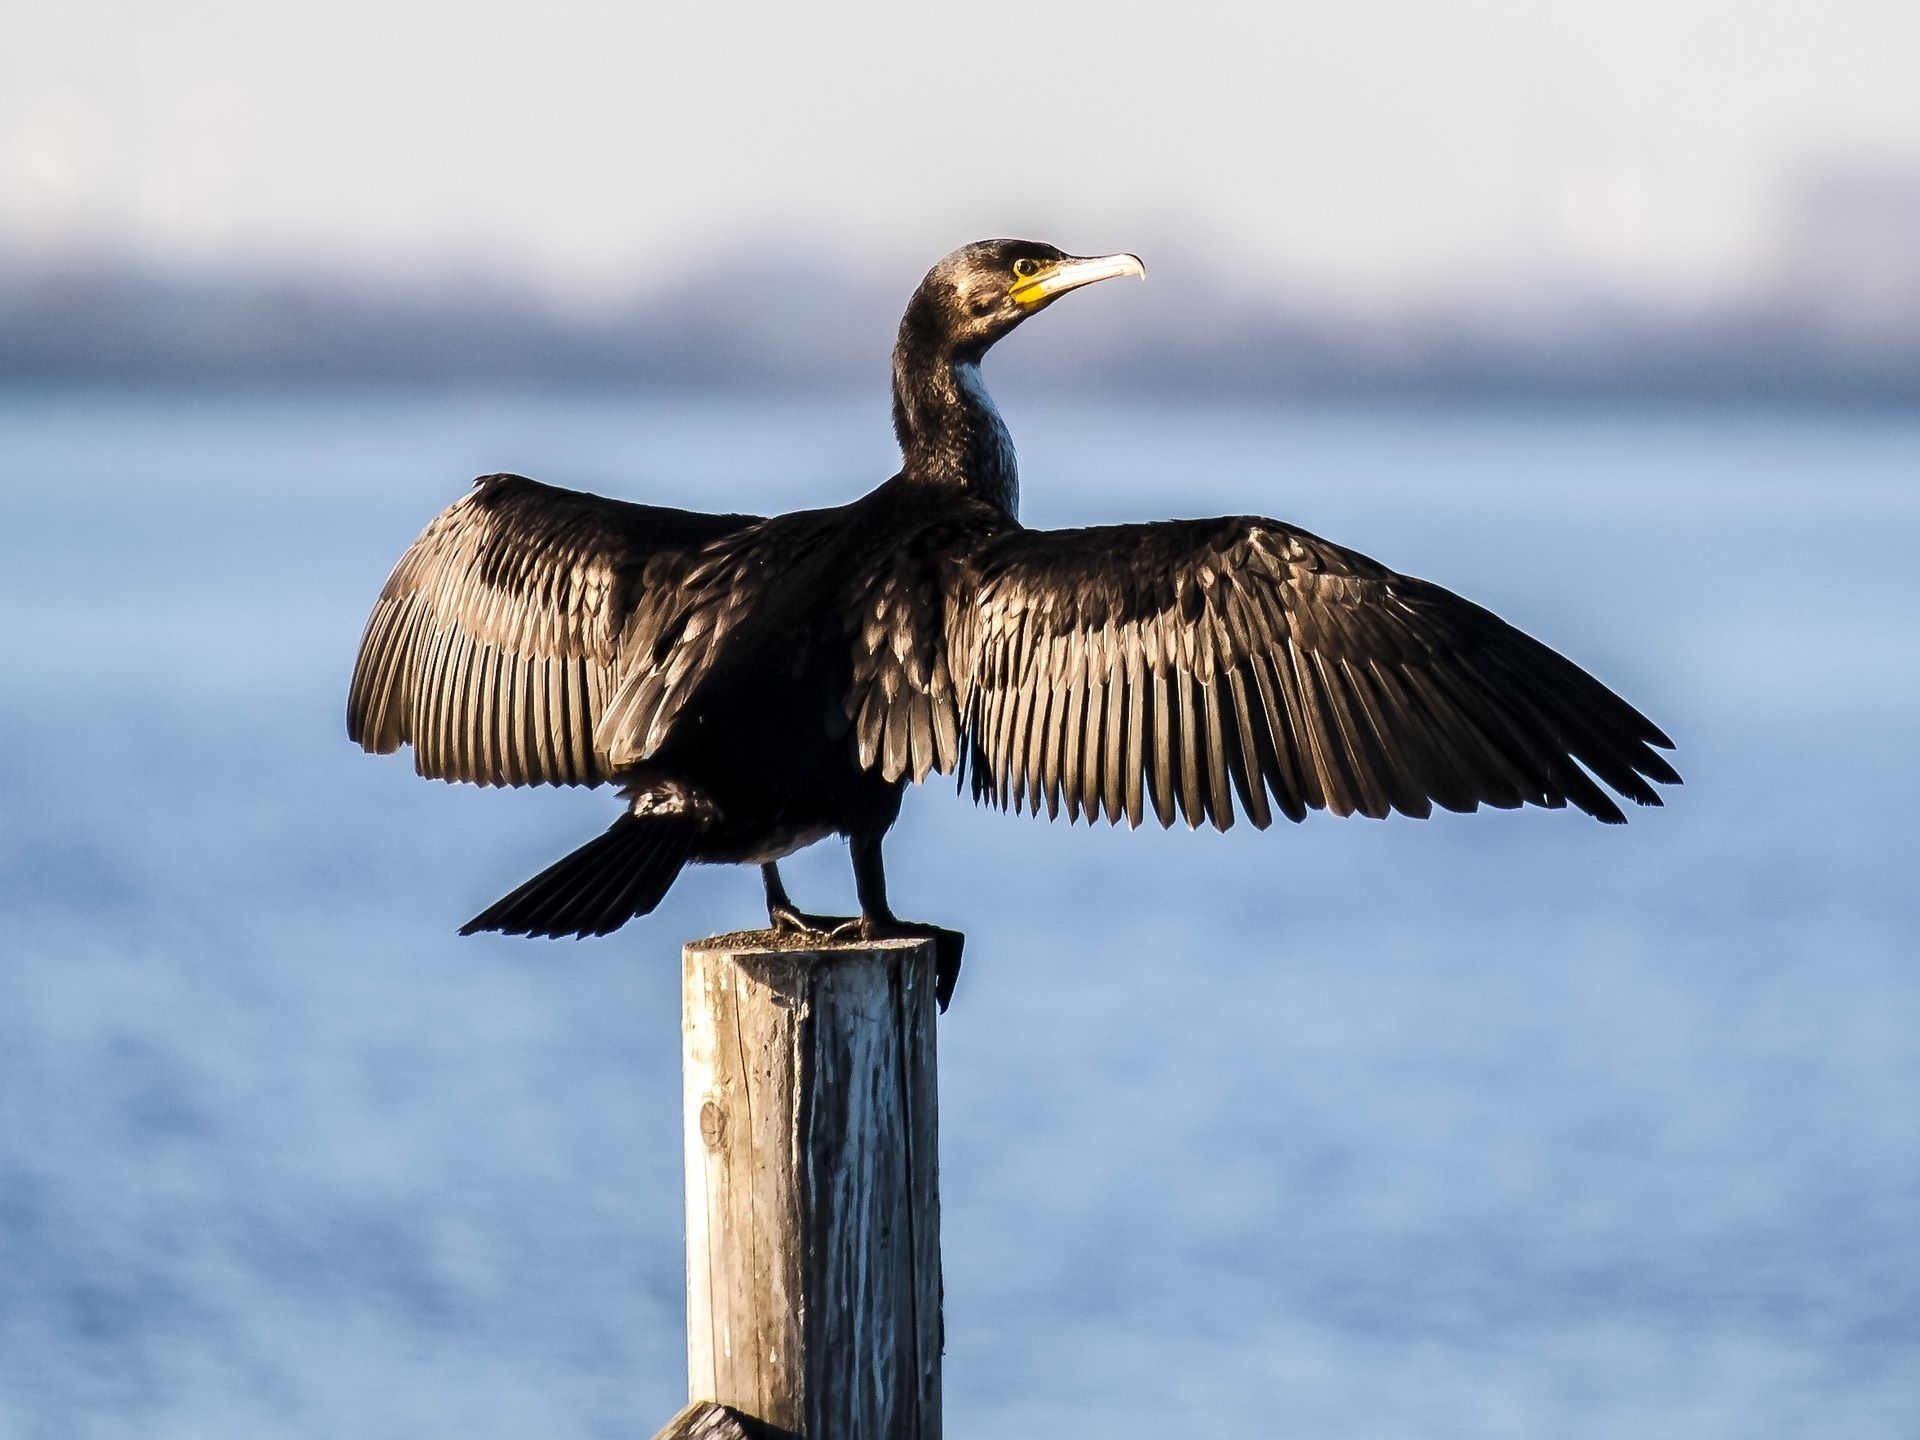 Siekiant apsaugoti žuvis, žadama leisti sumedžioti daugiau kormoranų